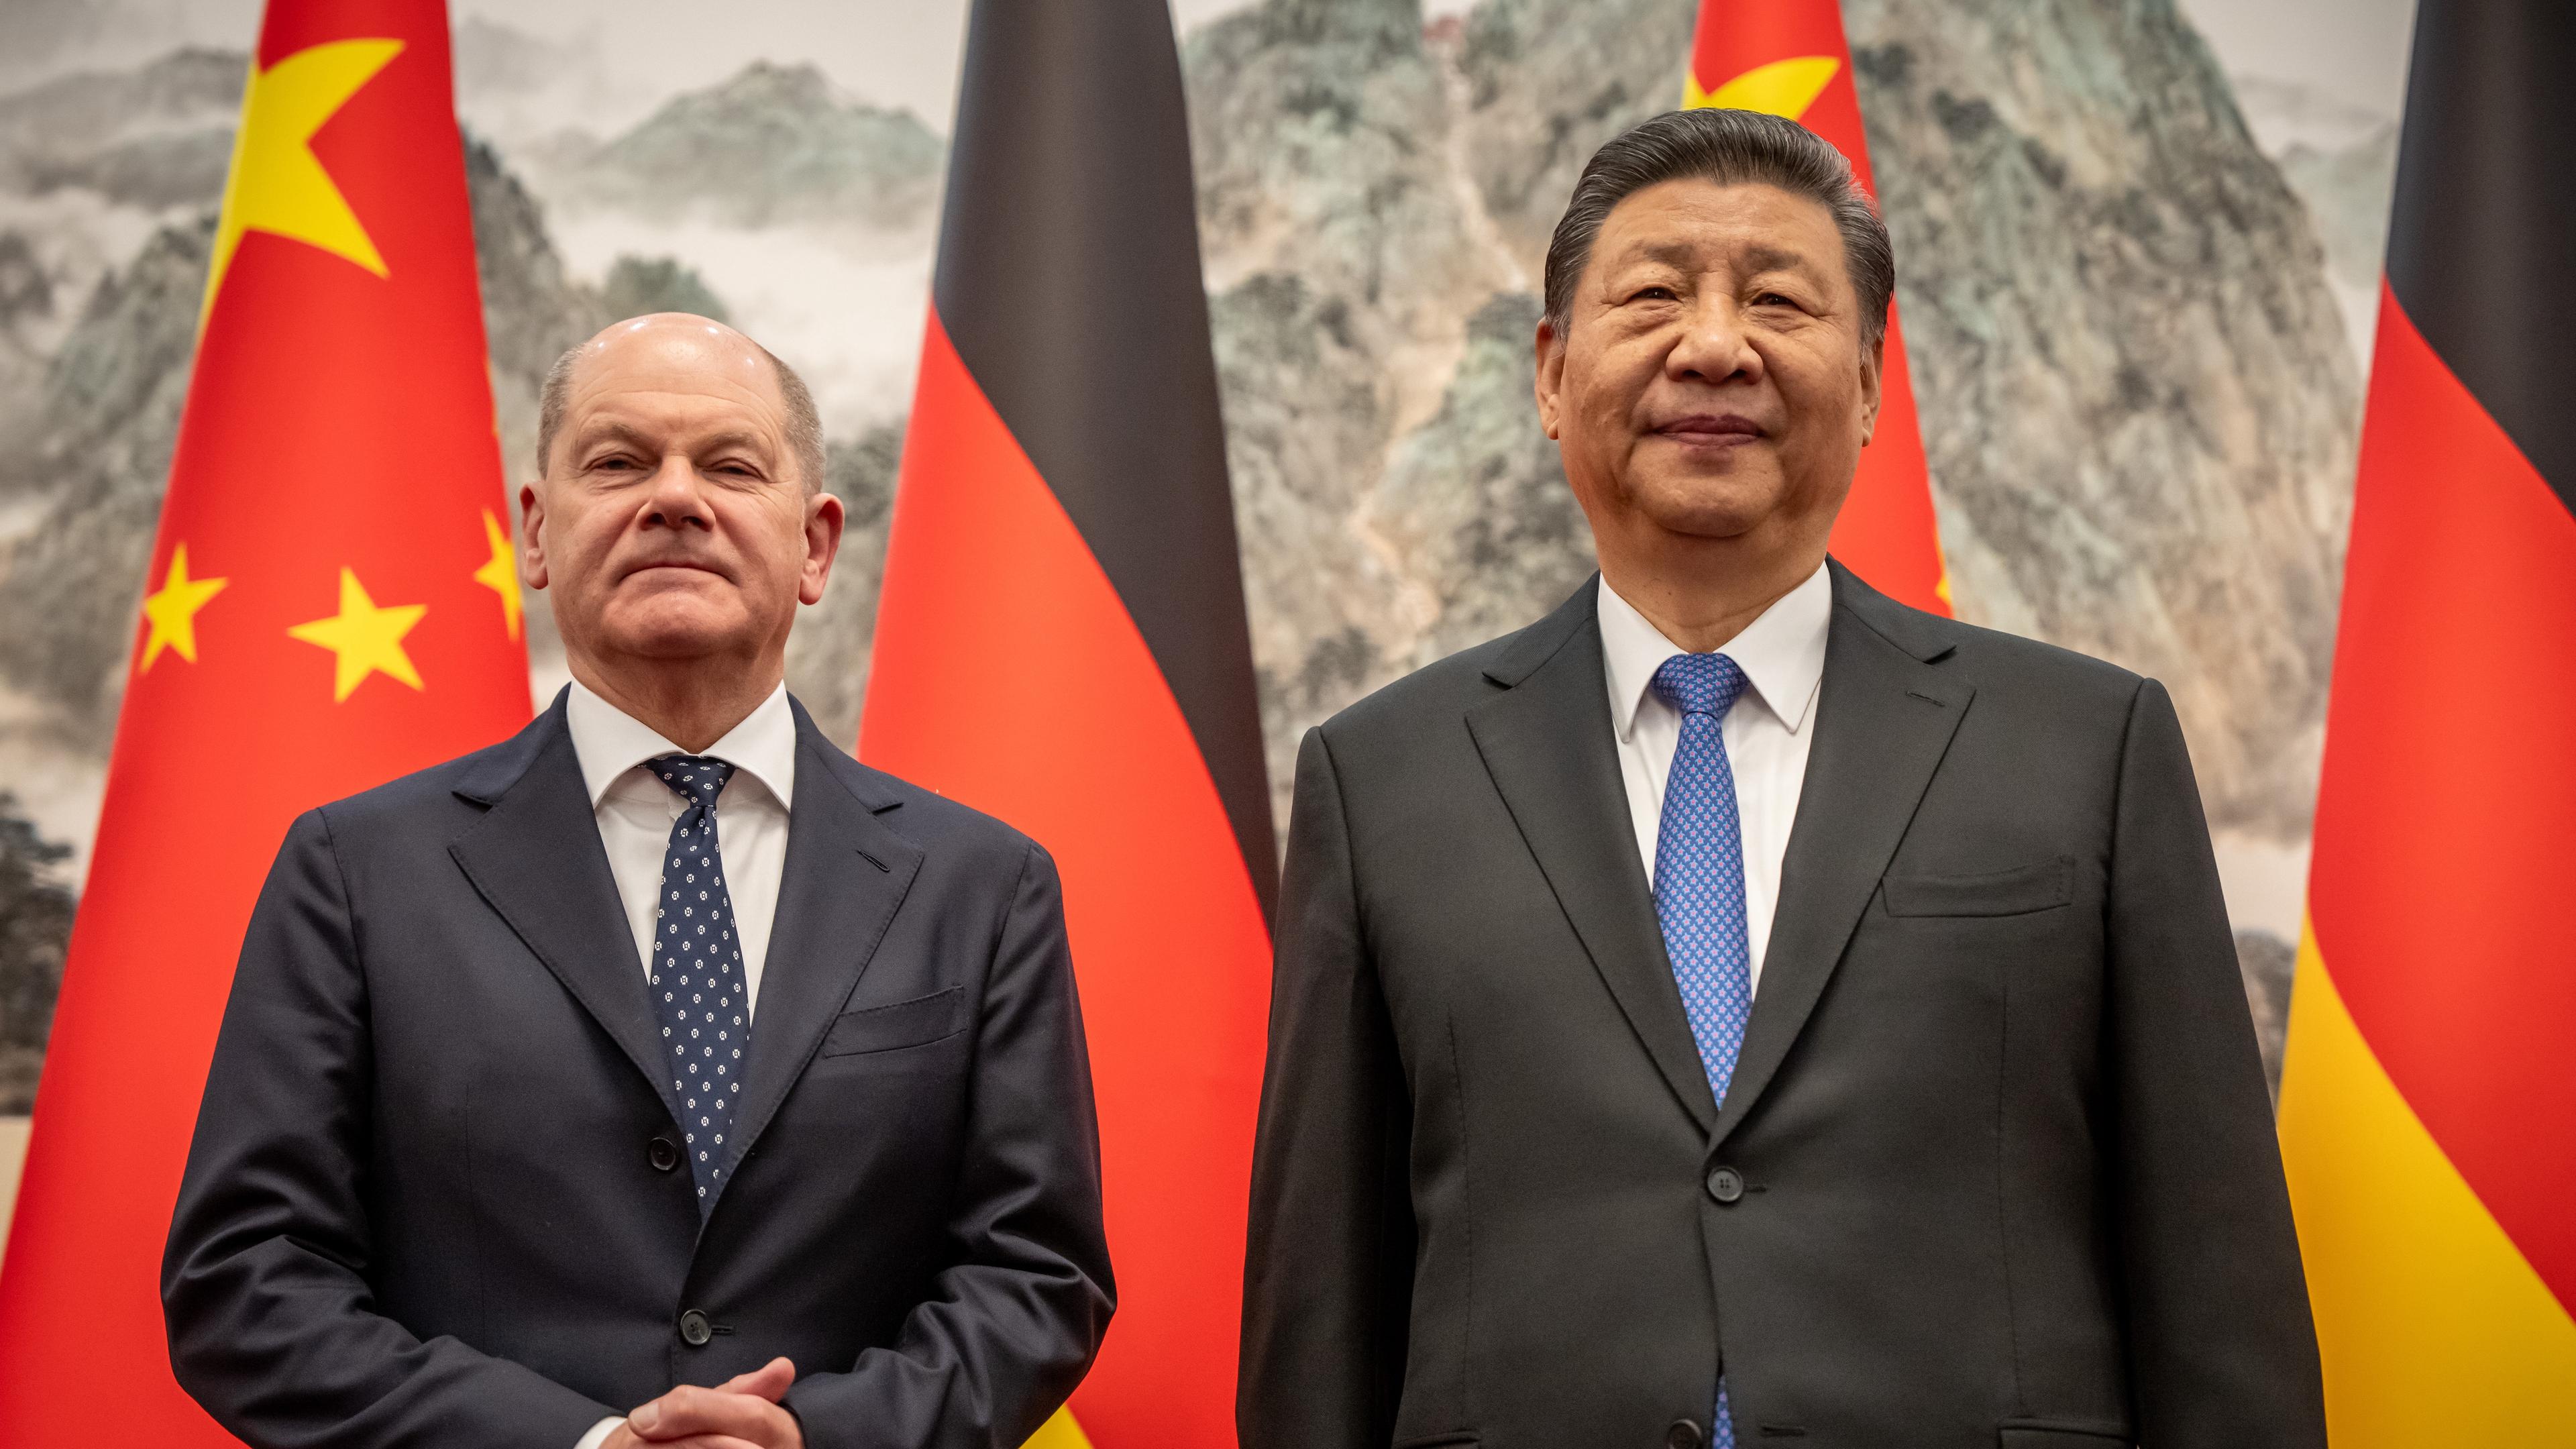 Bundeskanzler Olaf Scholz (SPD) wird von Xi Jinping, Staatspräsident von China, im Staatsgästehaus empfangen.